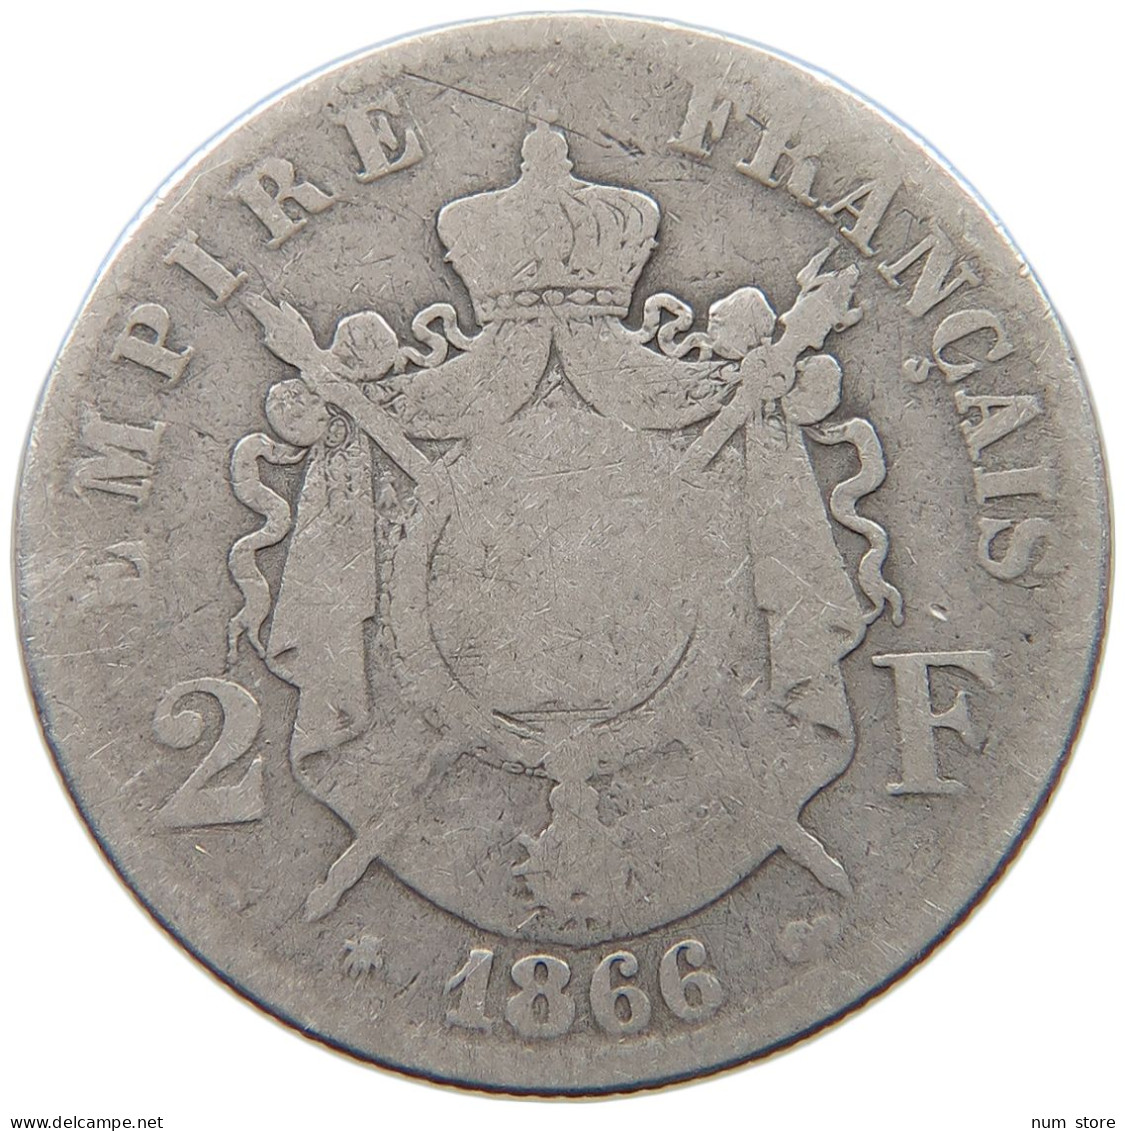 FRANCE 2 FRANCS 1866 A Napoleon III. (1852-1870) #a032 0653 - 2 Francs